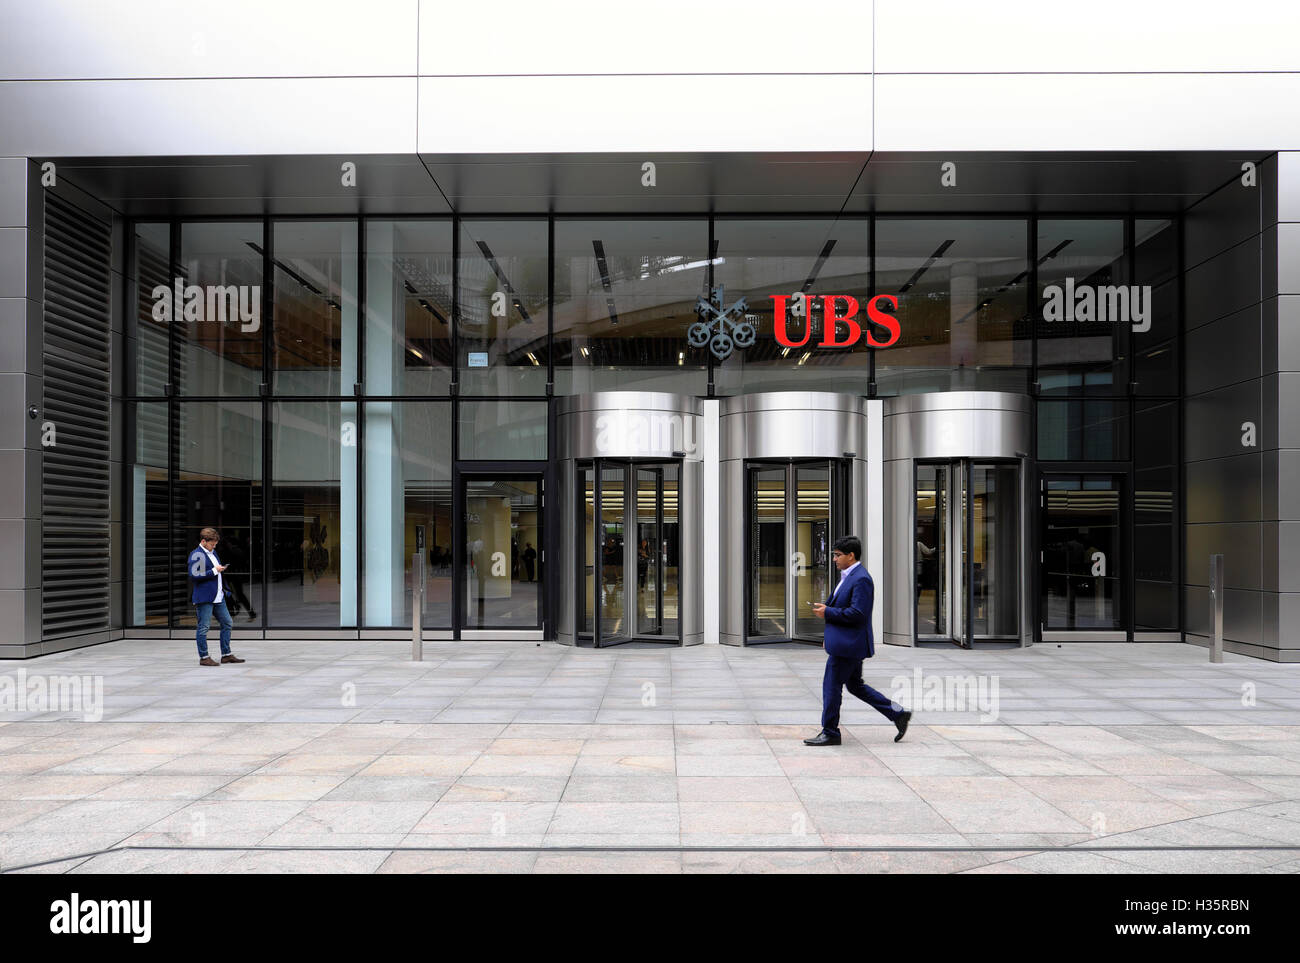 Ubs bank london immagini e fotografie stock ad alta risoluzione - Alamy